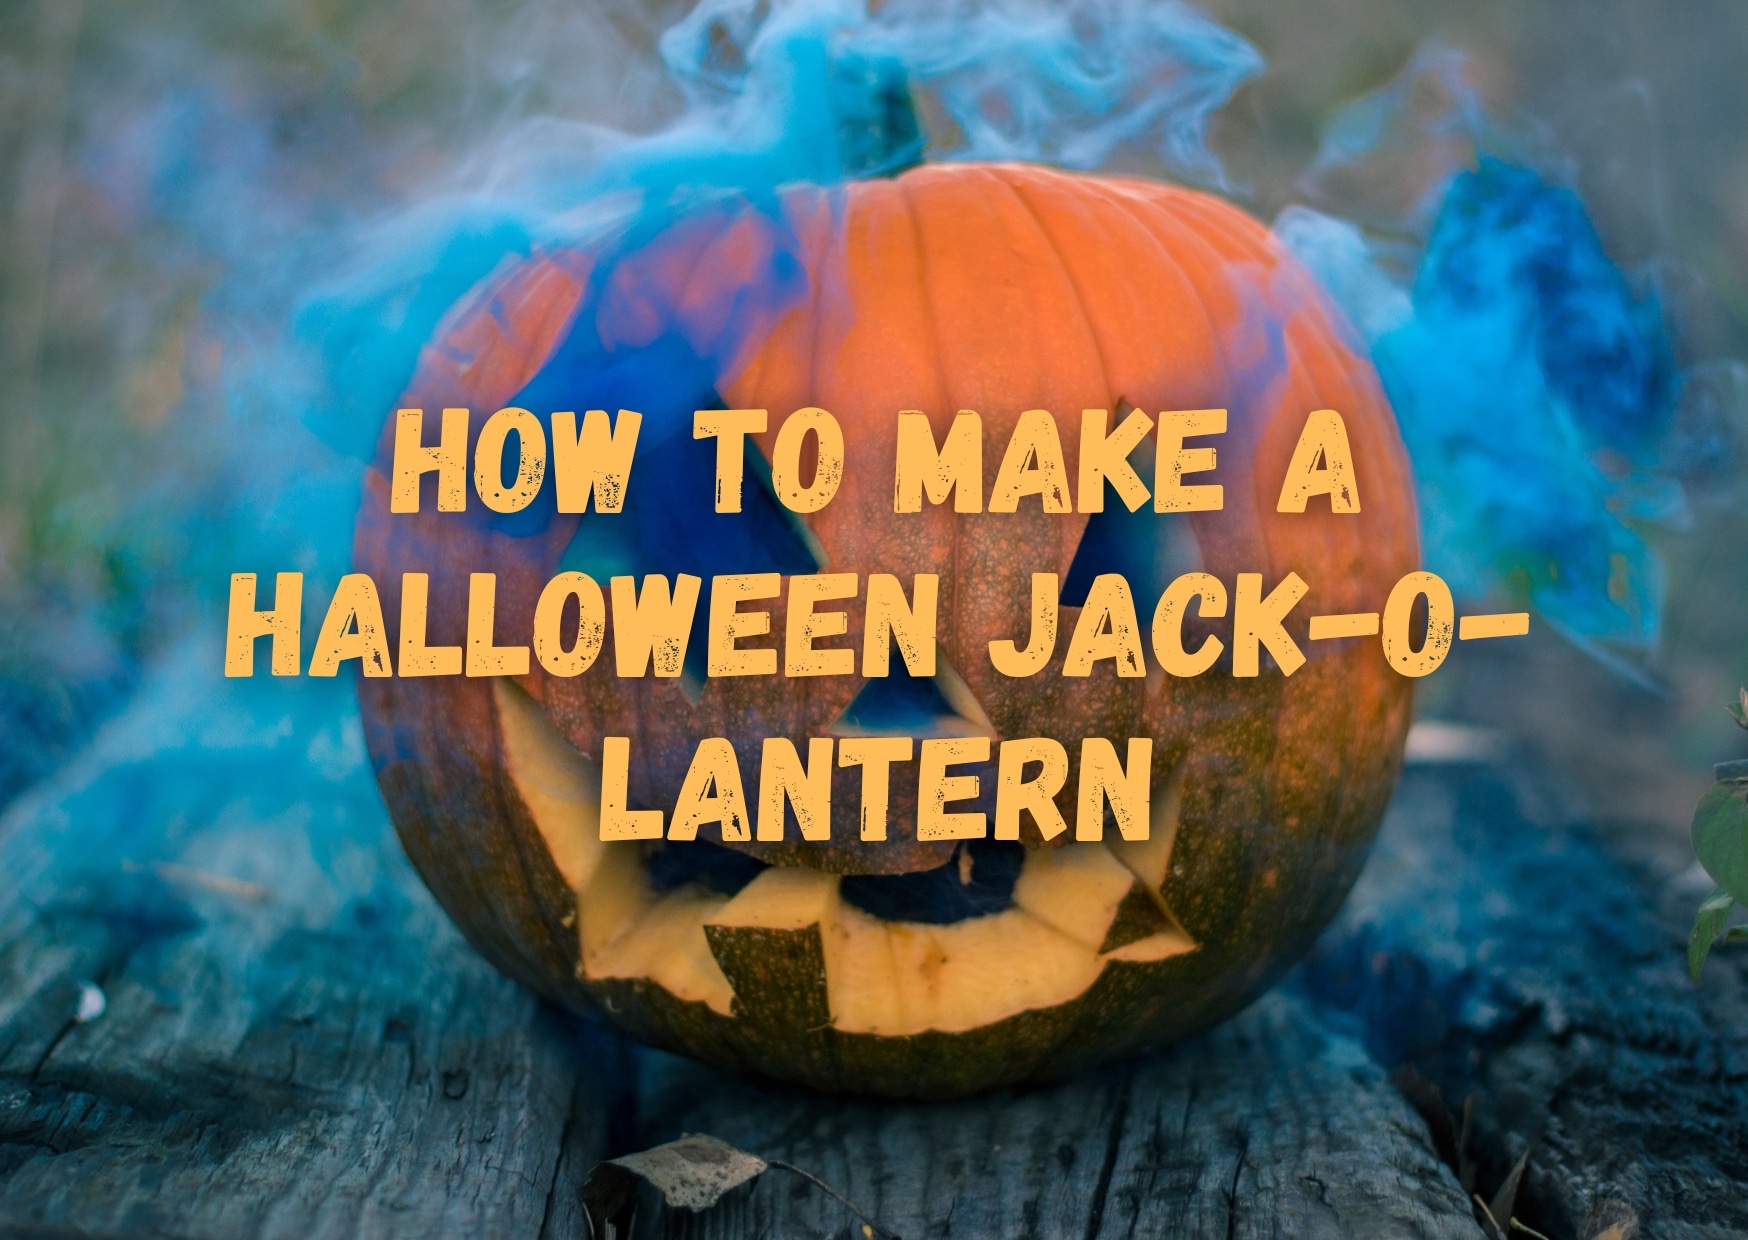 How To Make A Halloween Jack-O-Lantern